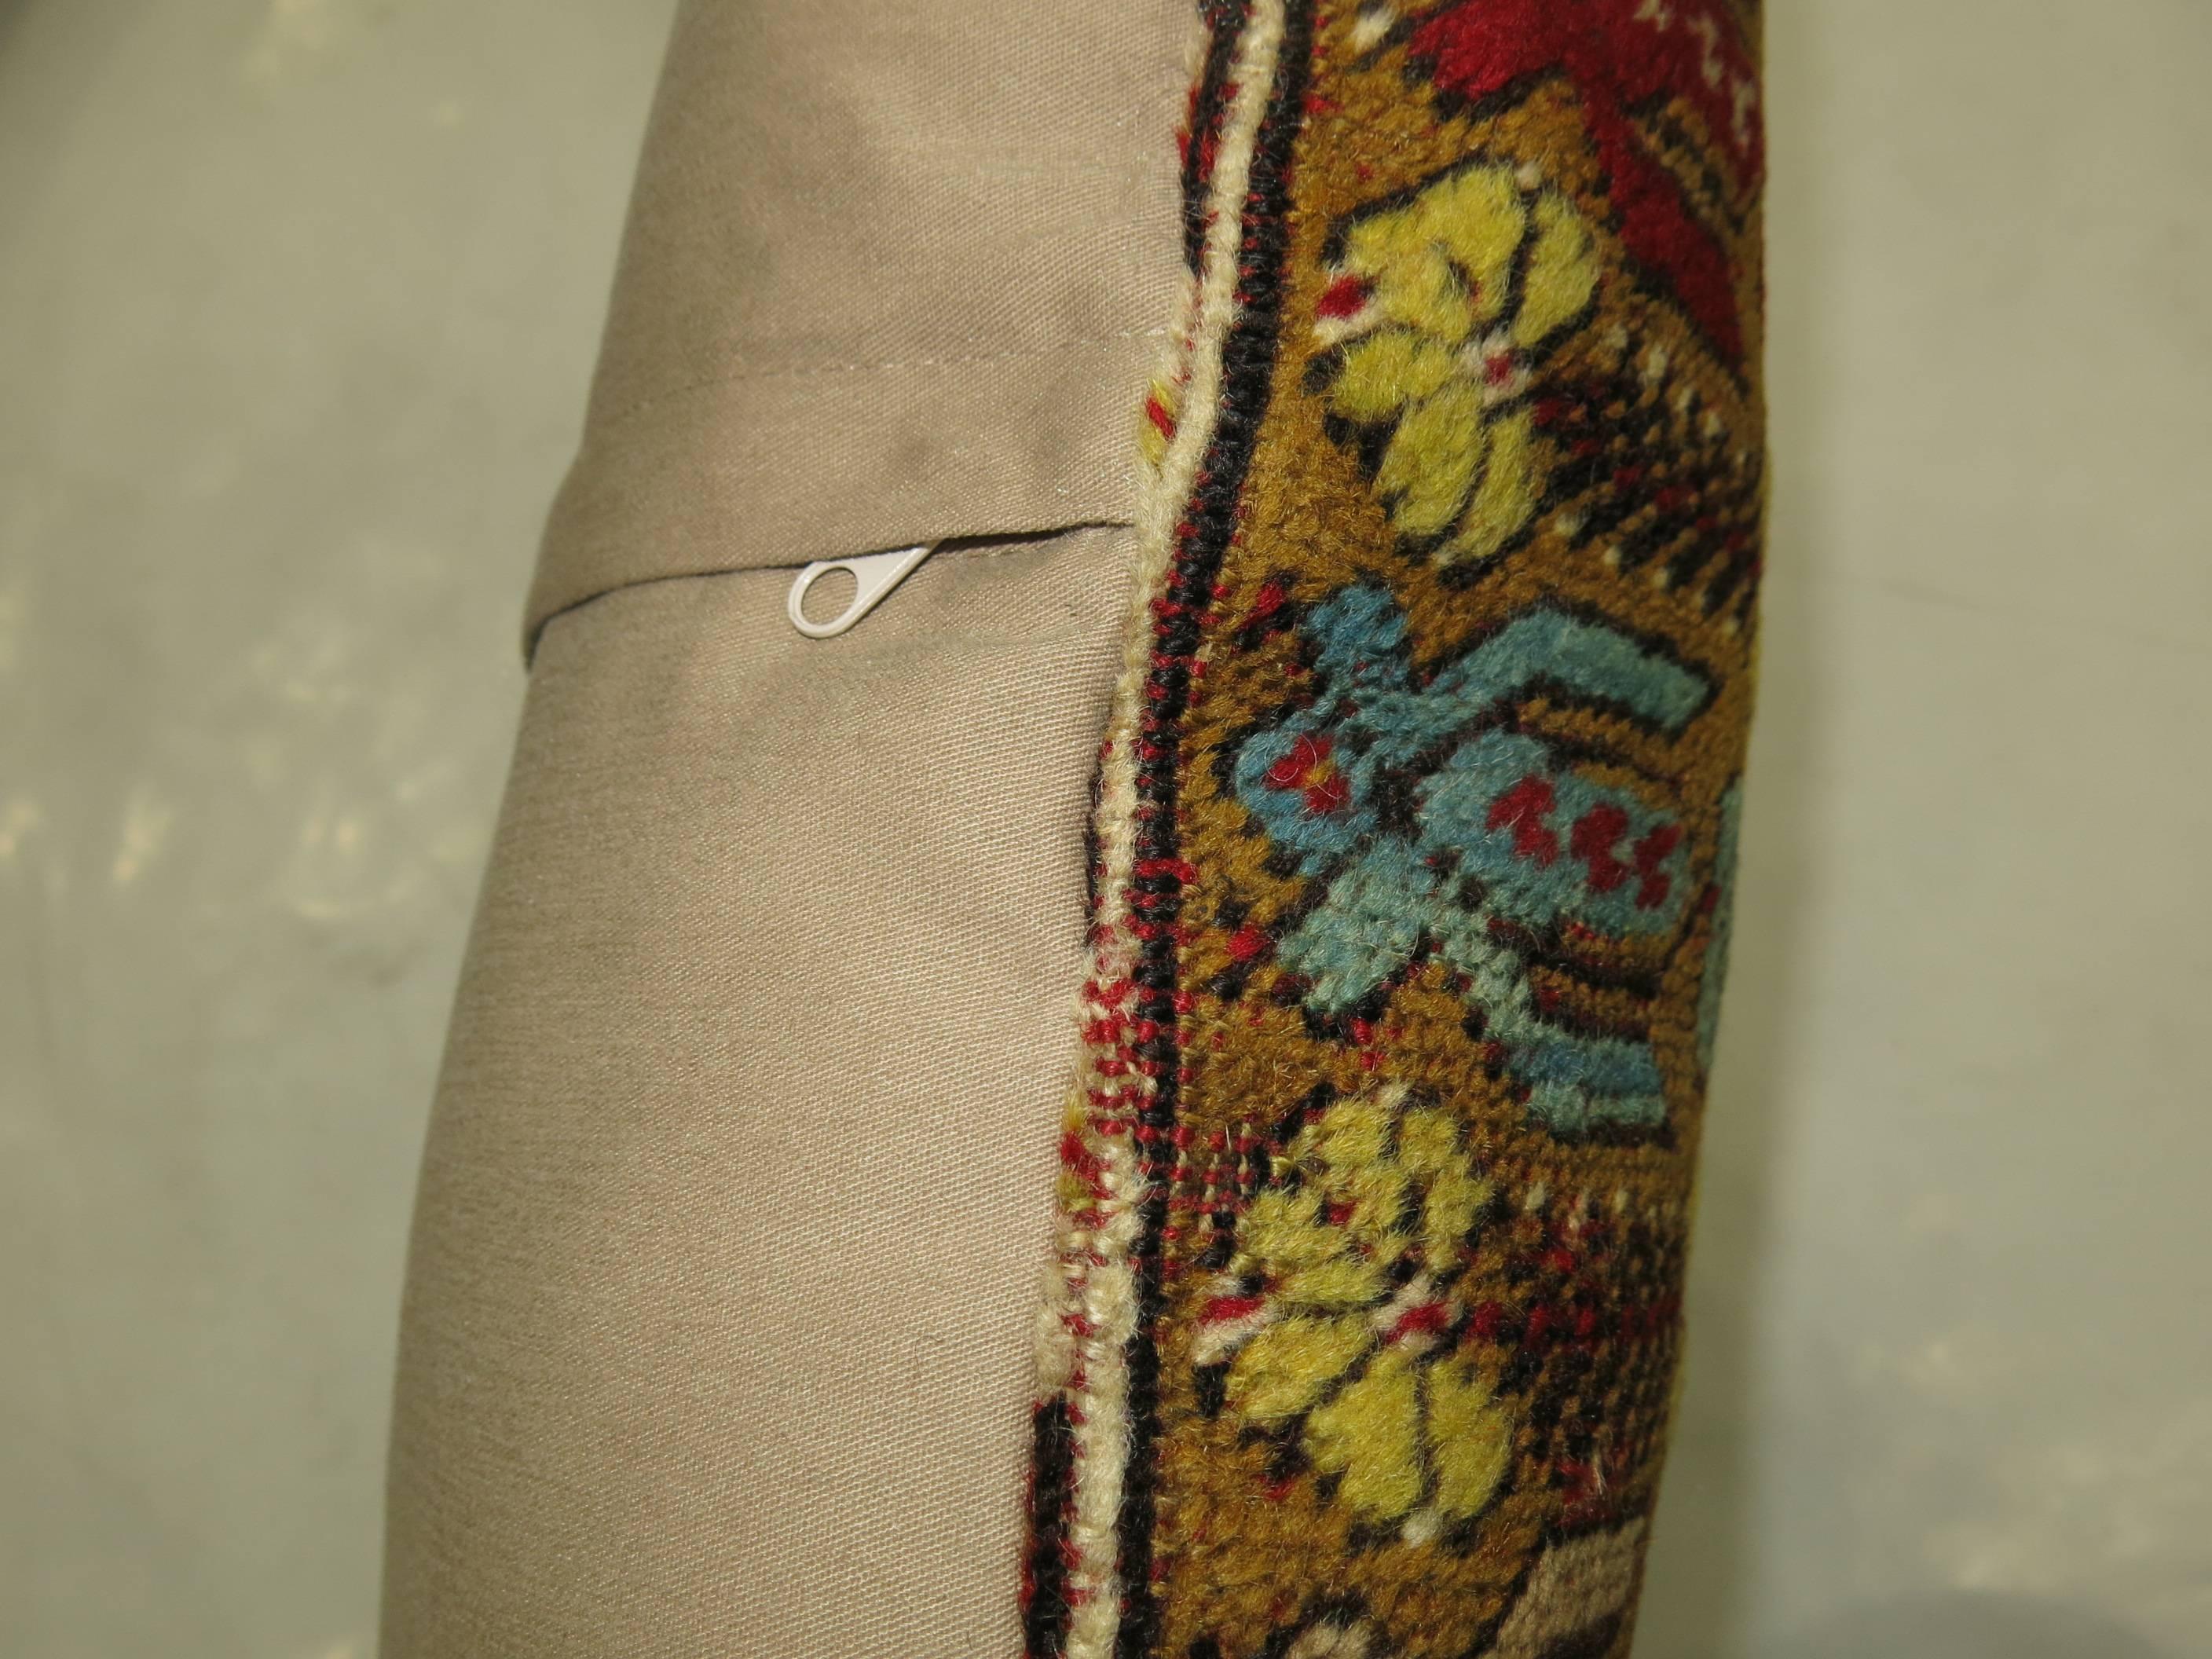 Oreiller fabriqué à partir d'un tapis turc coloré.

Mesures : 18